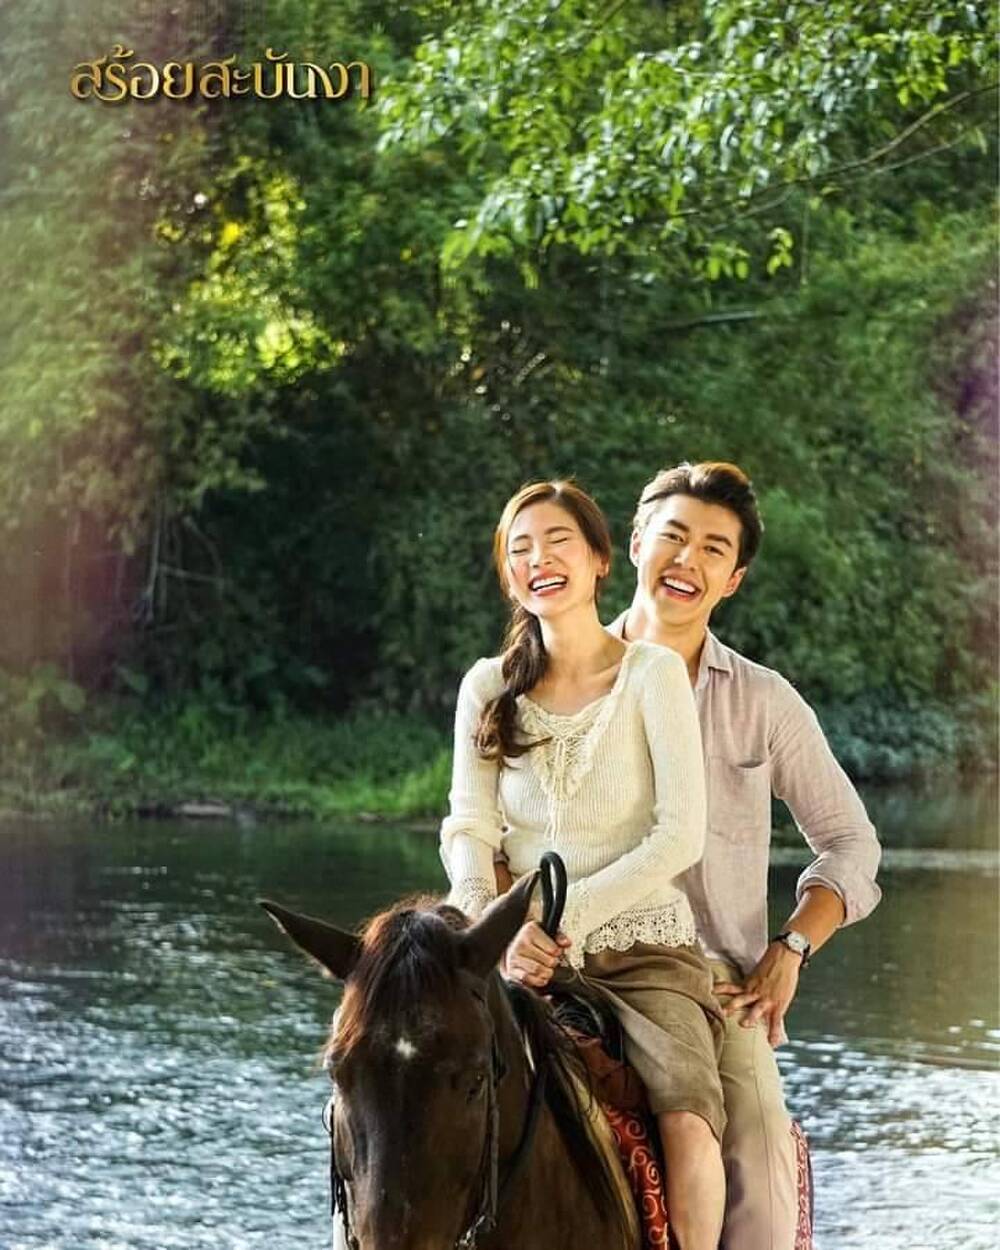 harper bazaar phim thai lan hay nhat ve tinh yeu 9 - Top 20 bộ phim Thái Lan hay nhất về tình yêu không nên bỏ qua